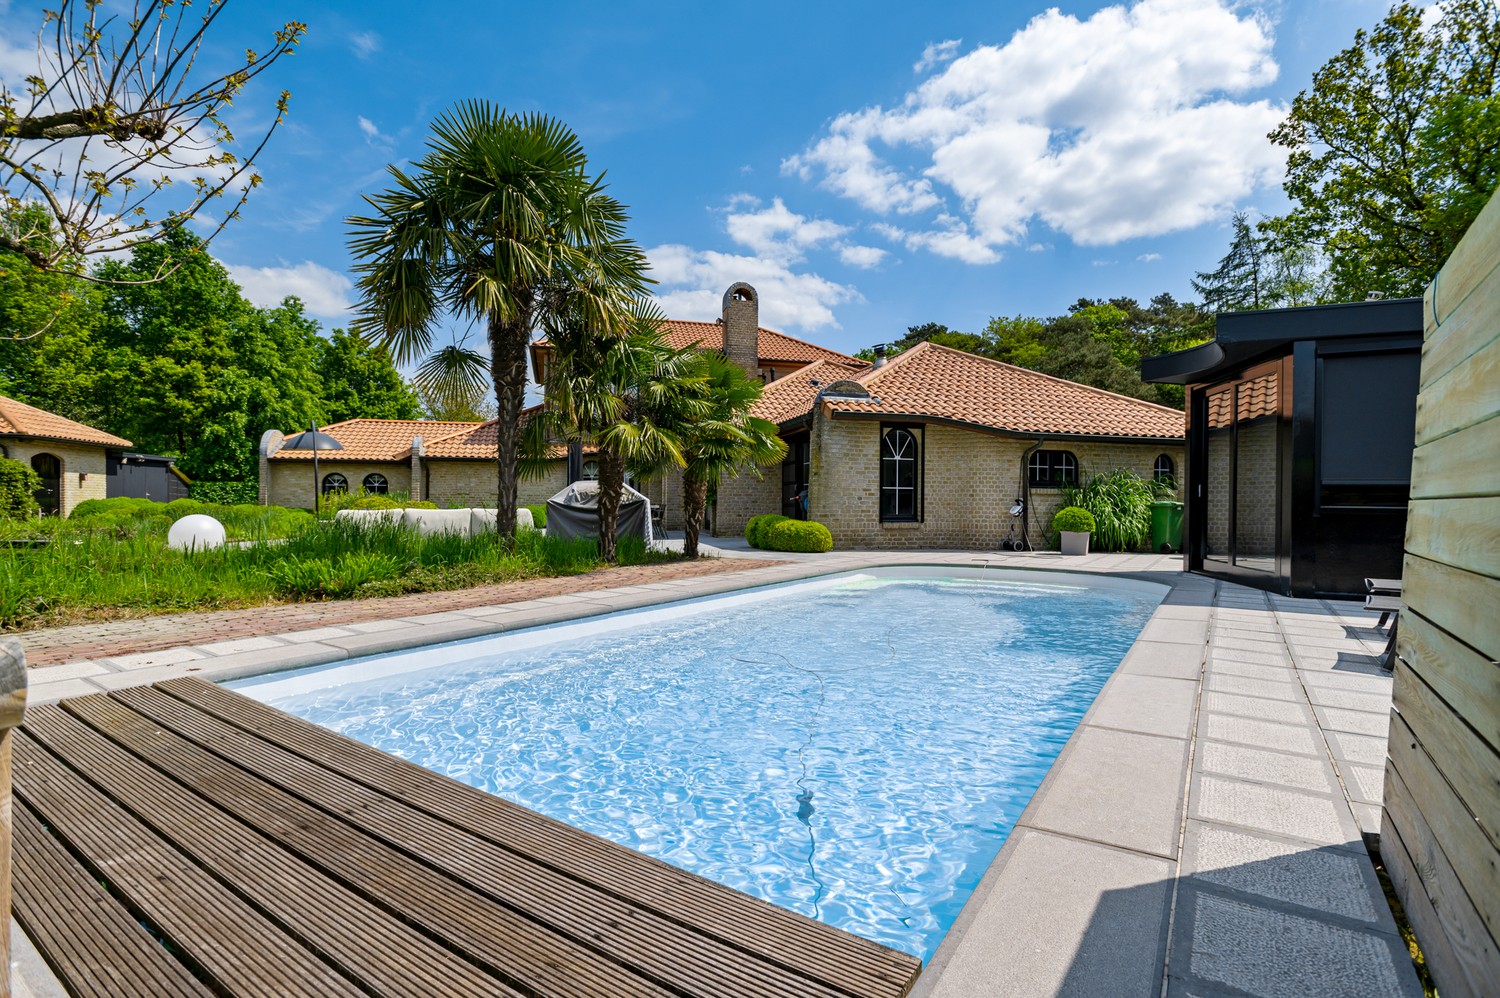 Exclusieve villa met 5 slaapkamers, verwarmd zwembad en Z-tuin in Pulle. afbeelding 27